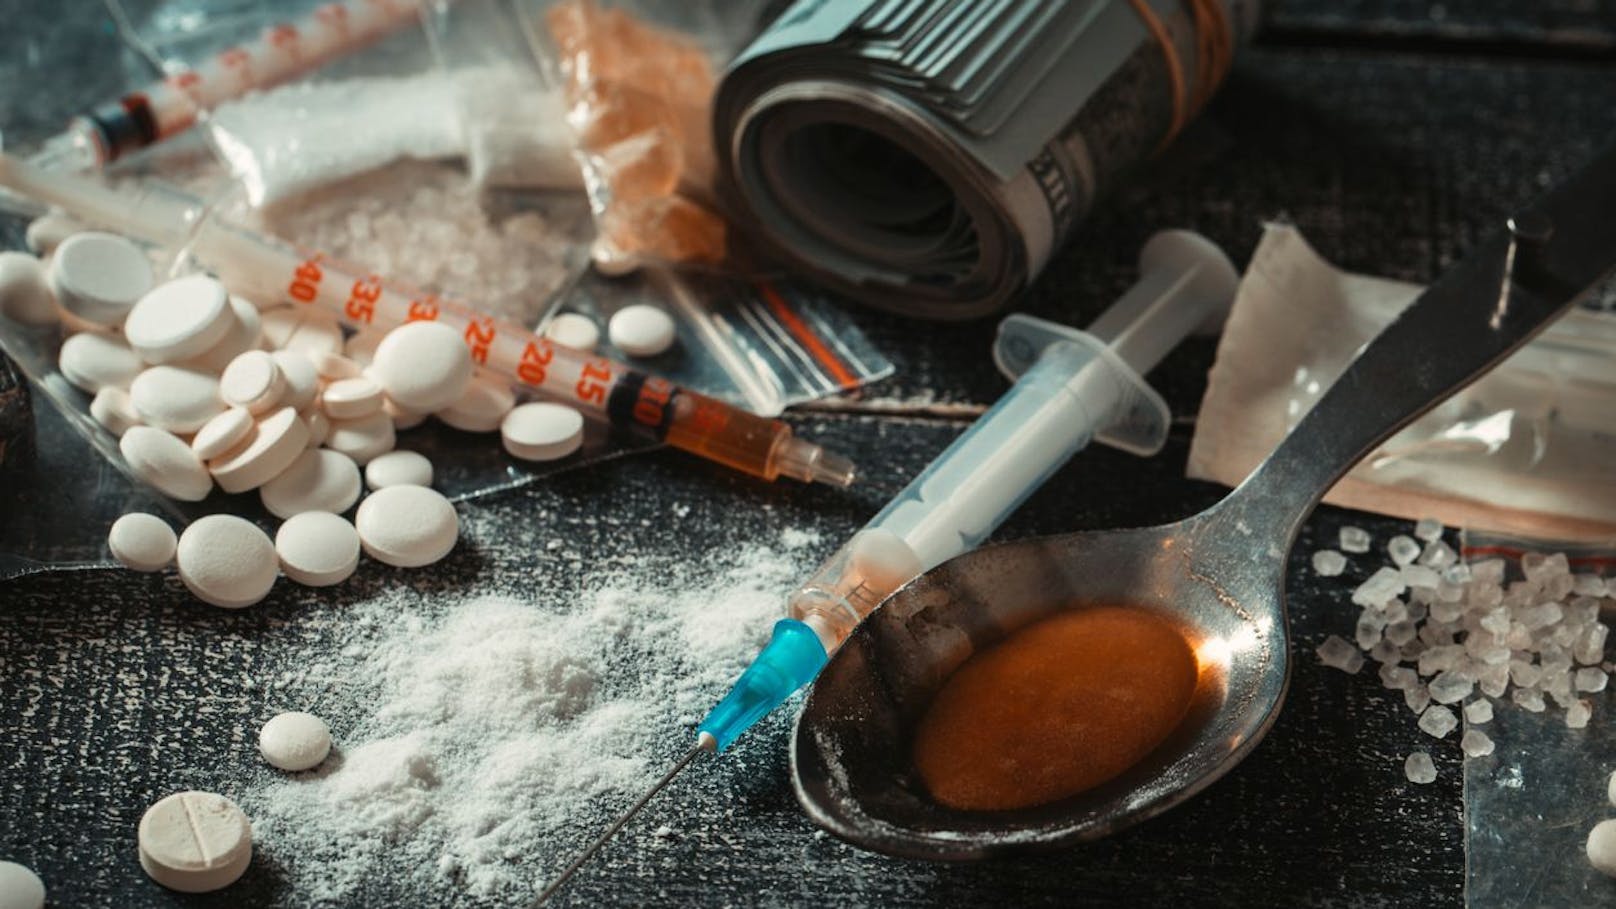 Zwei Mädchen hatten Ecstasy mit vermutlich "extrem hohem Wirkstoffgehalt" konsumiert – eines ist nun im Spital verstorben.